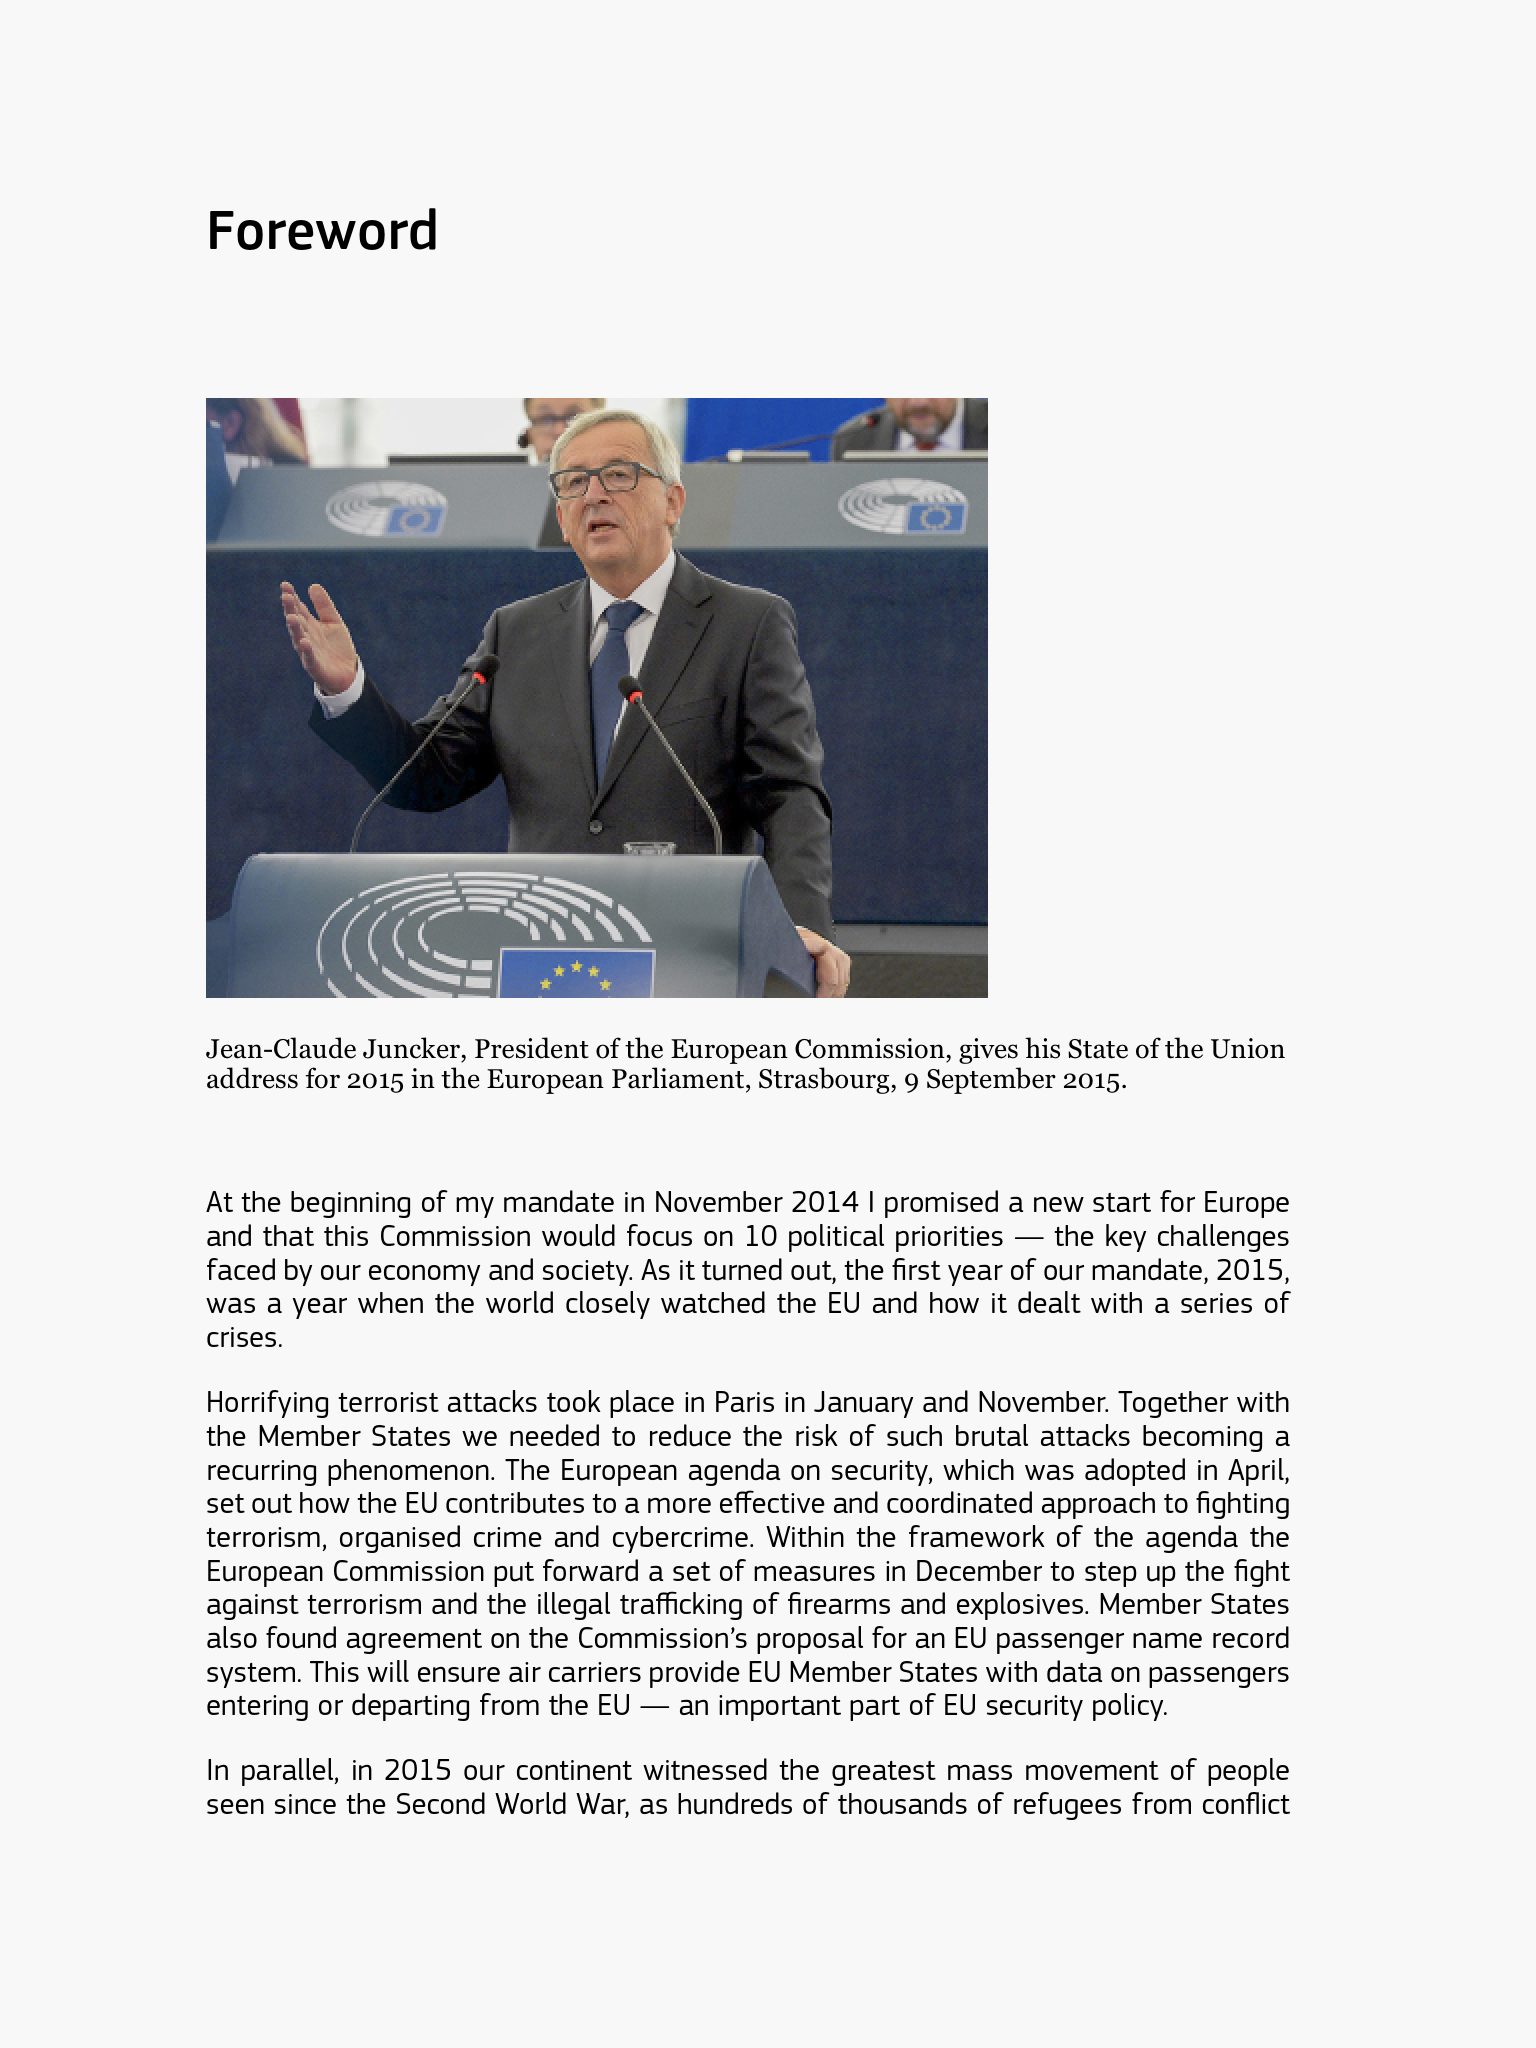 EU report in EPUB